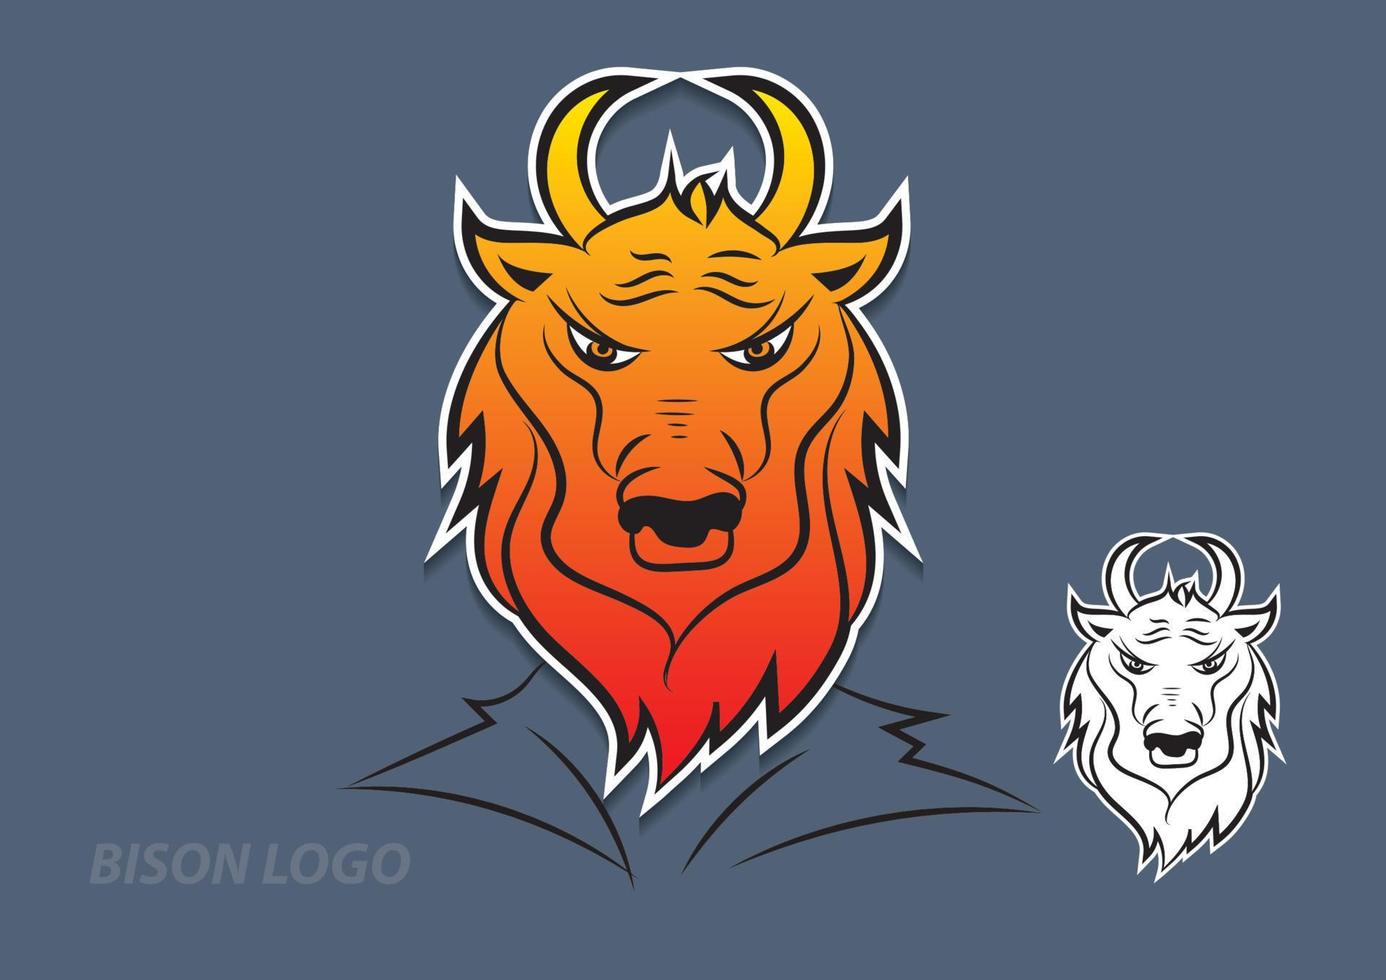 Bison-Logo-Vektordesign, Zeichen, Tiersymbol-Vektorillustration für Unternehmen, Kuhkarikatur vektor